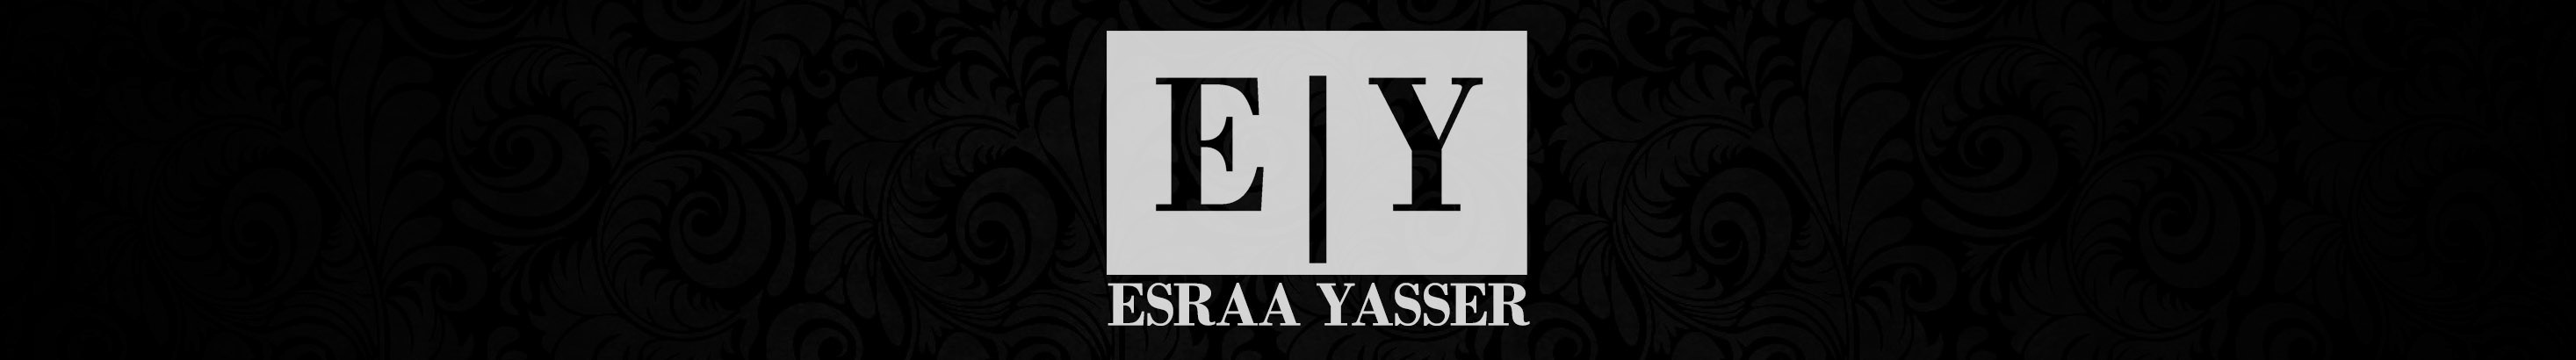 Bannière de profil de Esraa Yasser